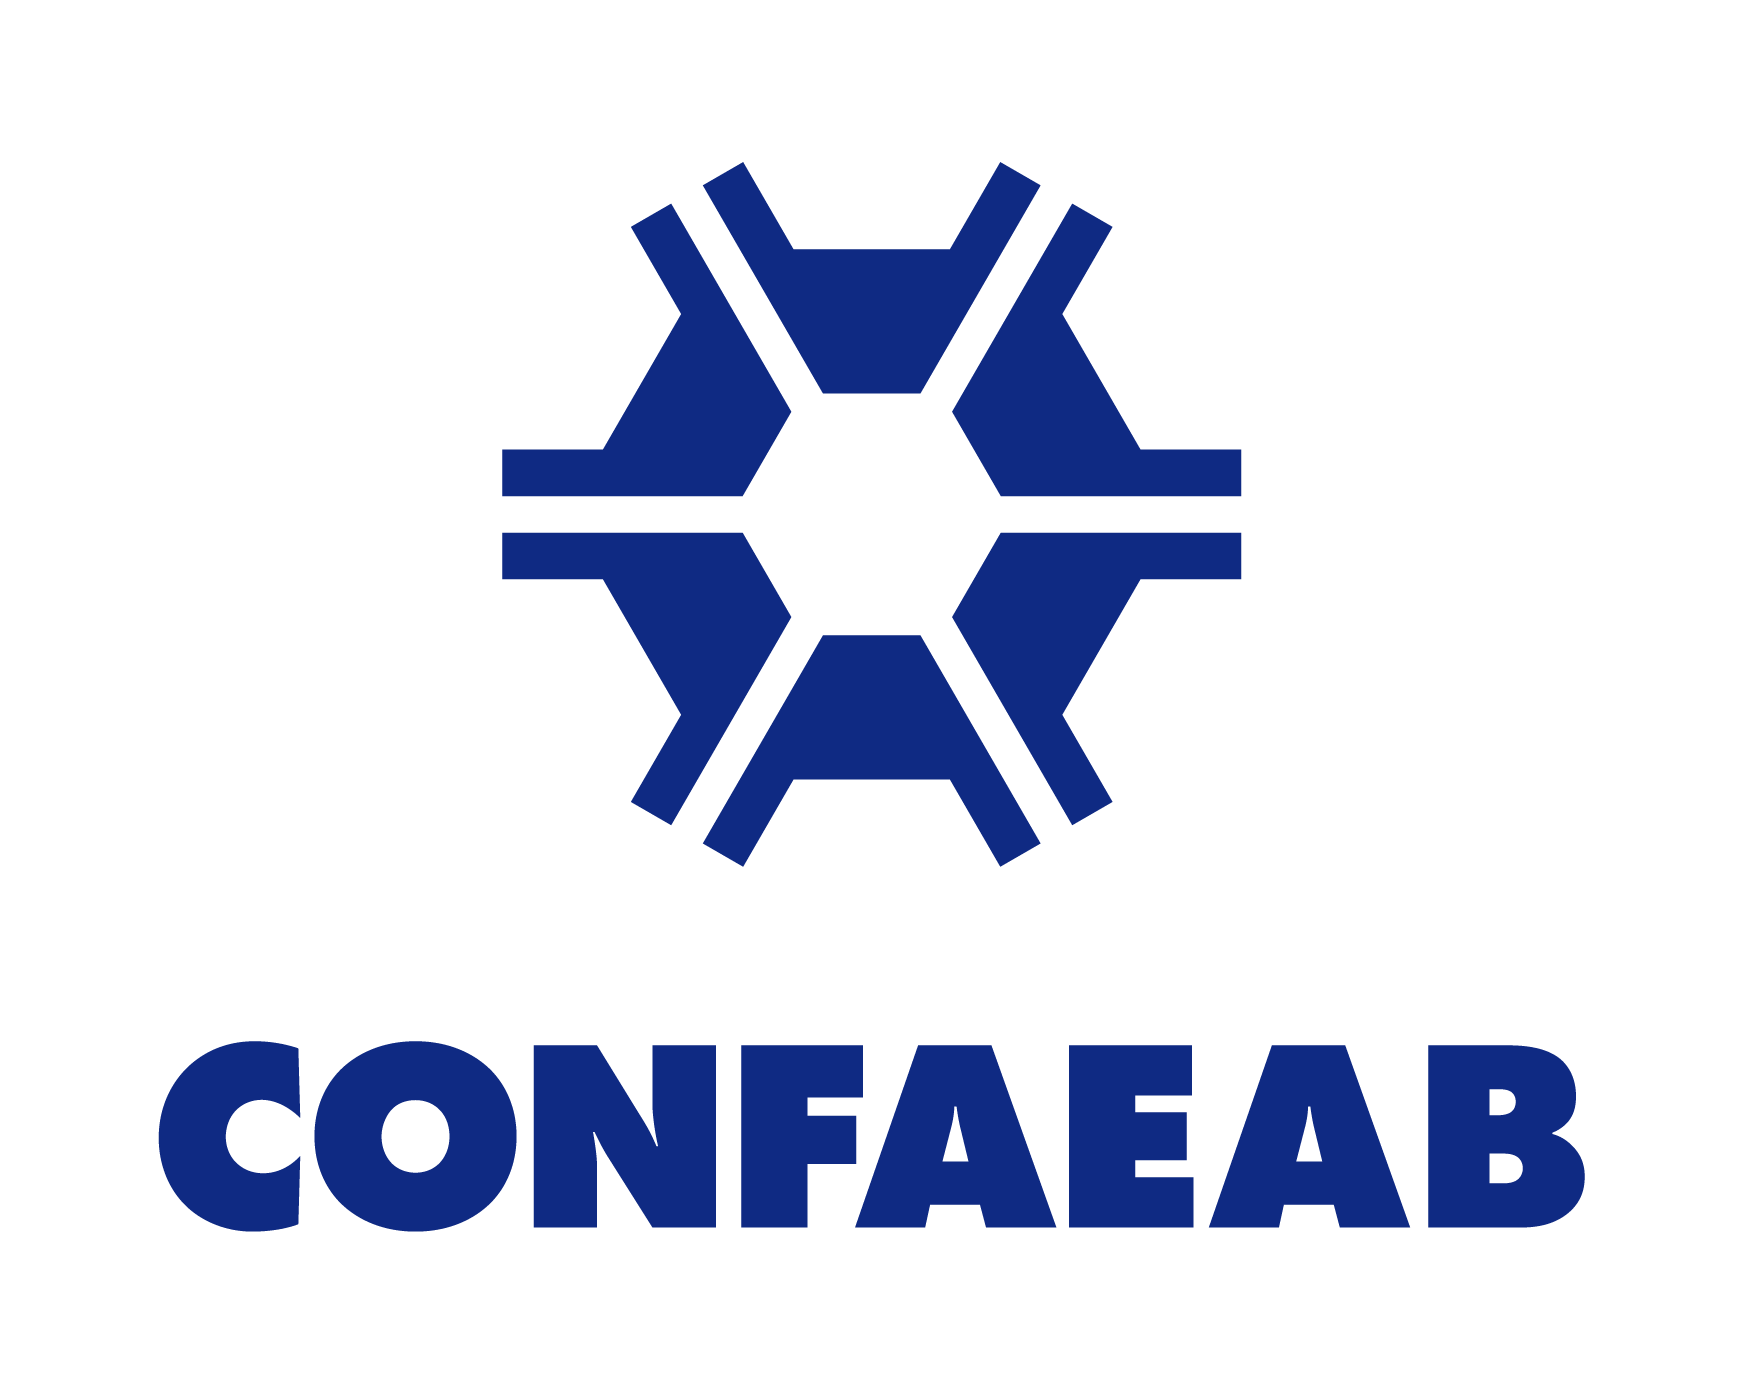 Confaeab